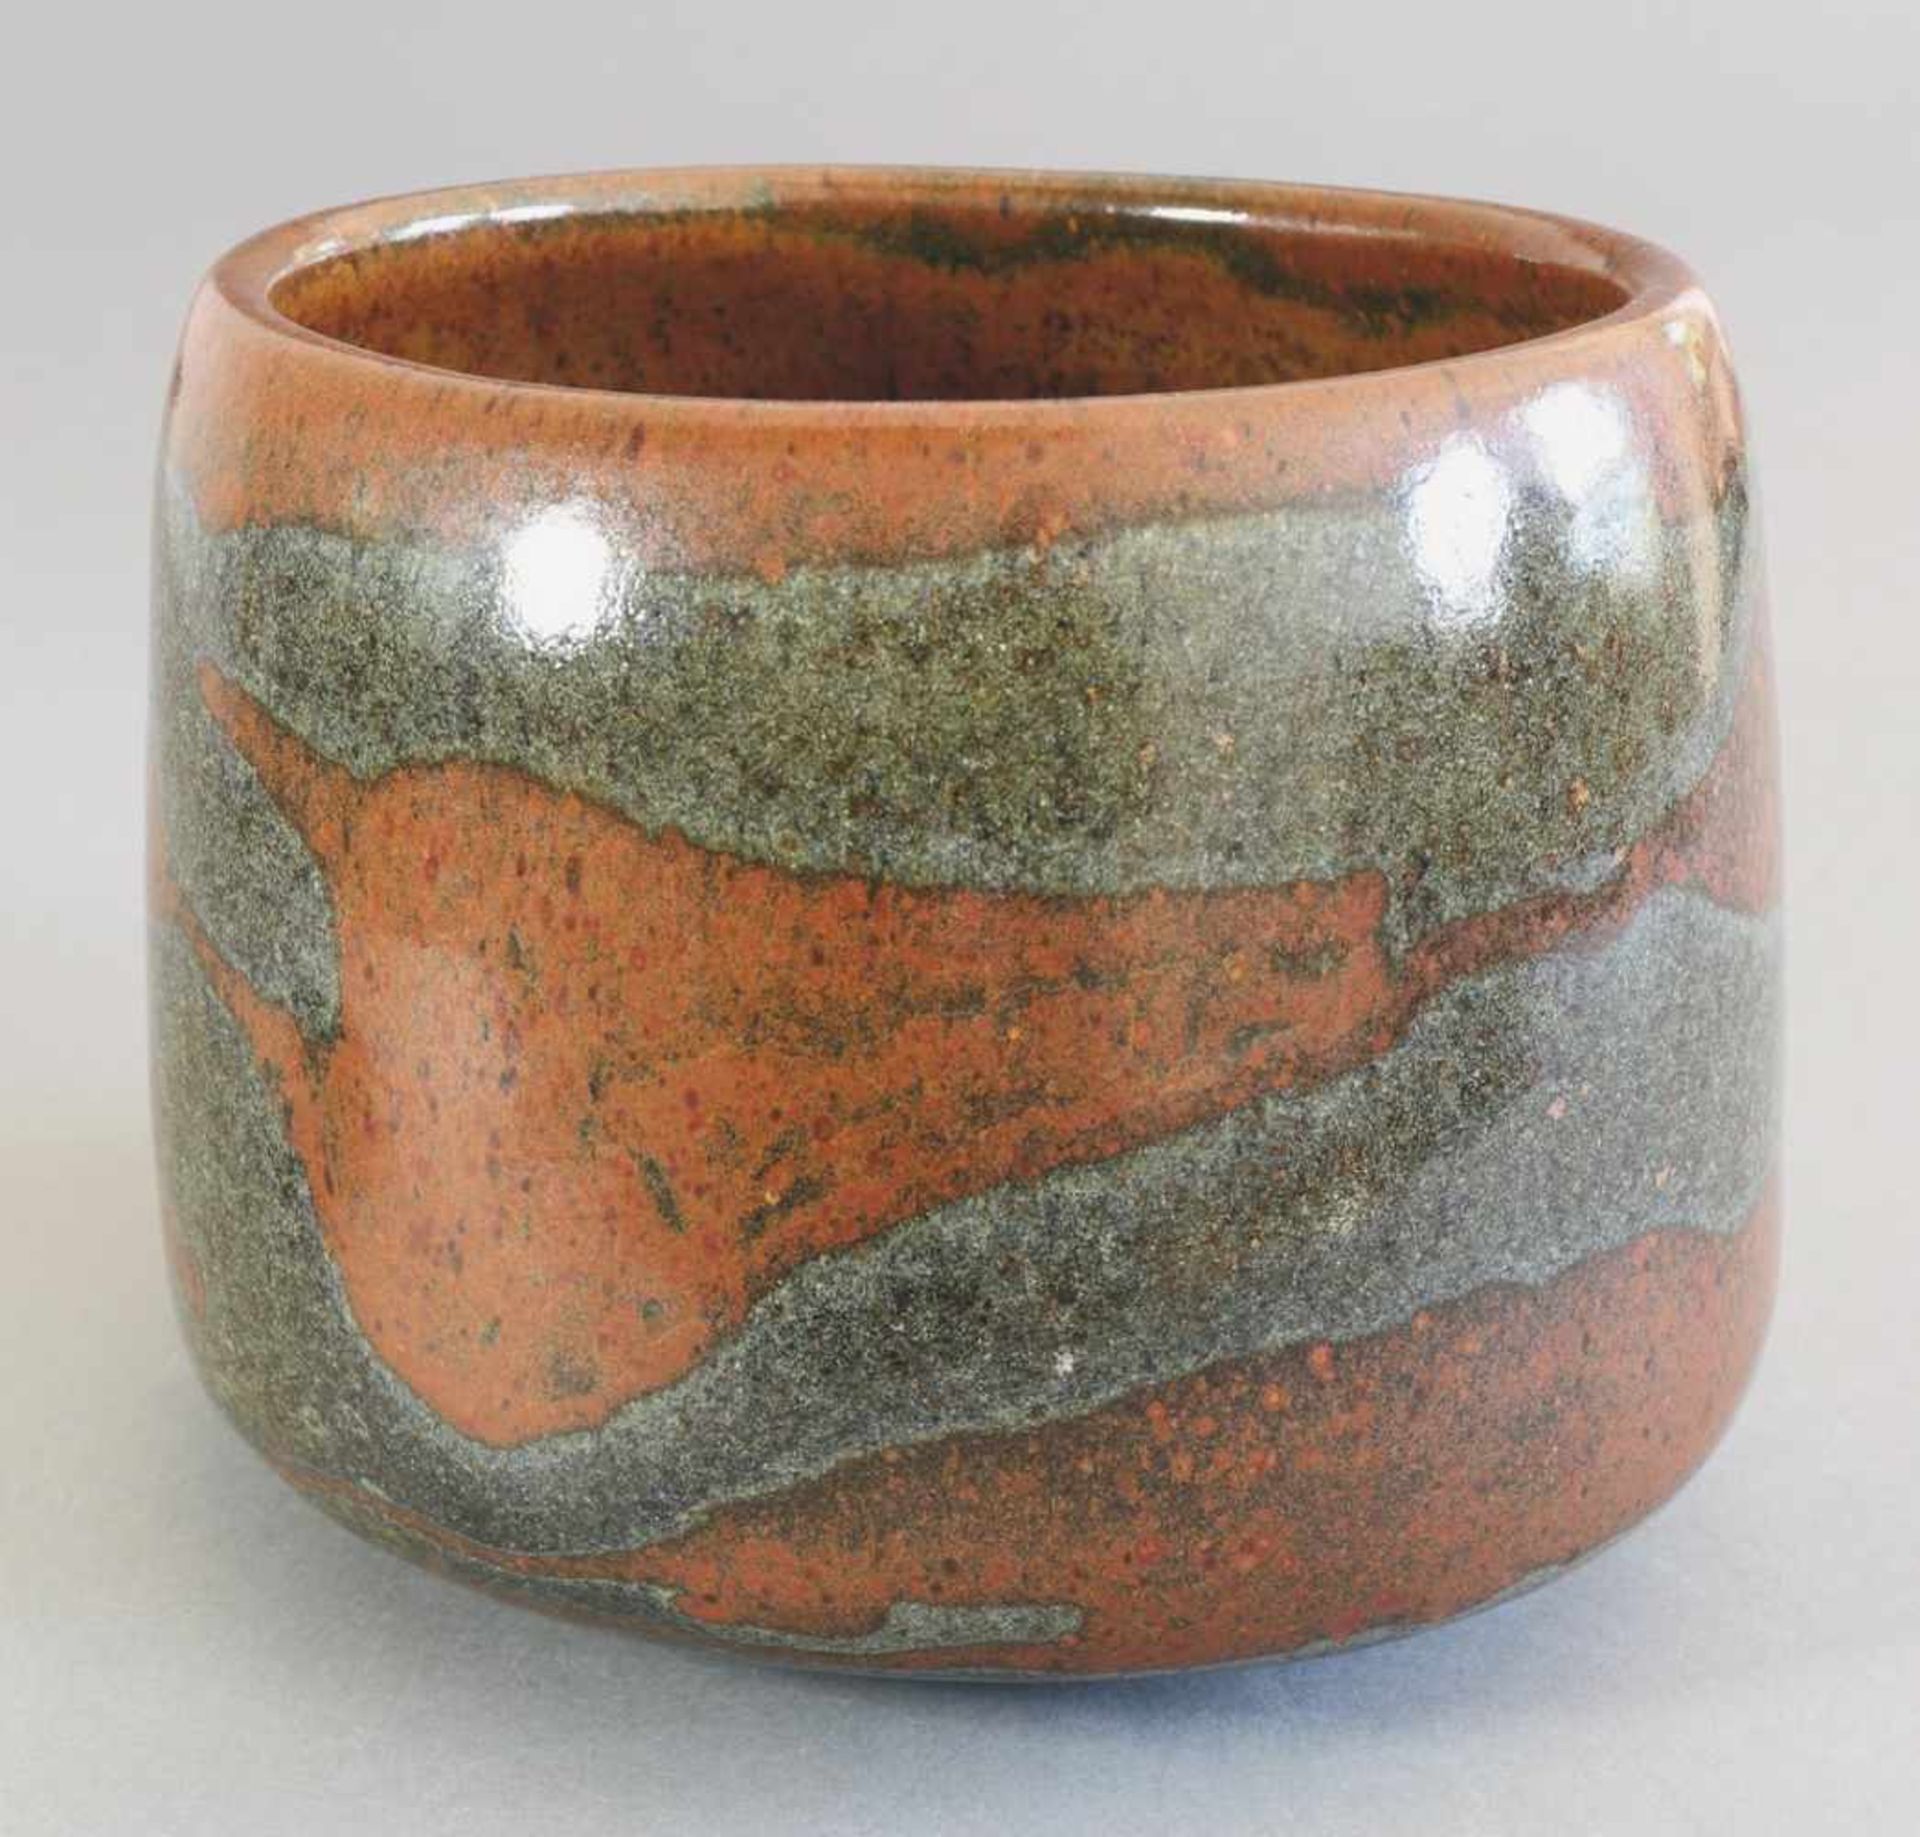 Karl Scheid1967Großes Gefäß/ Vase. 1967. Steinzeug. Rostbraune mehrtonig strukturierte Glasur mit